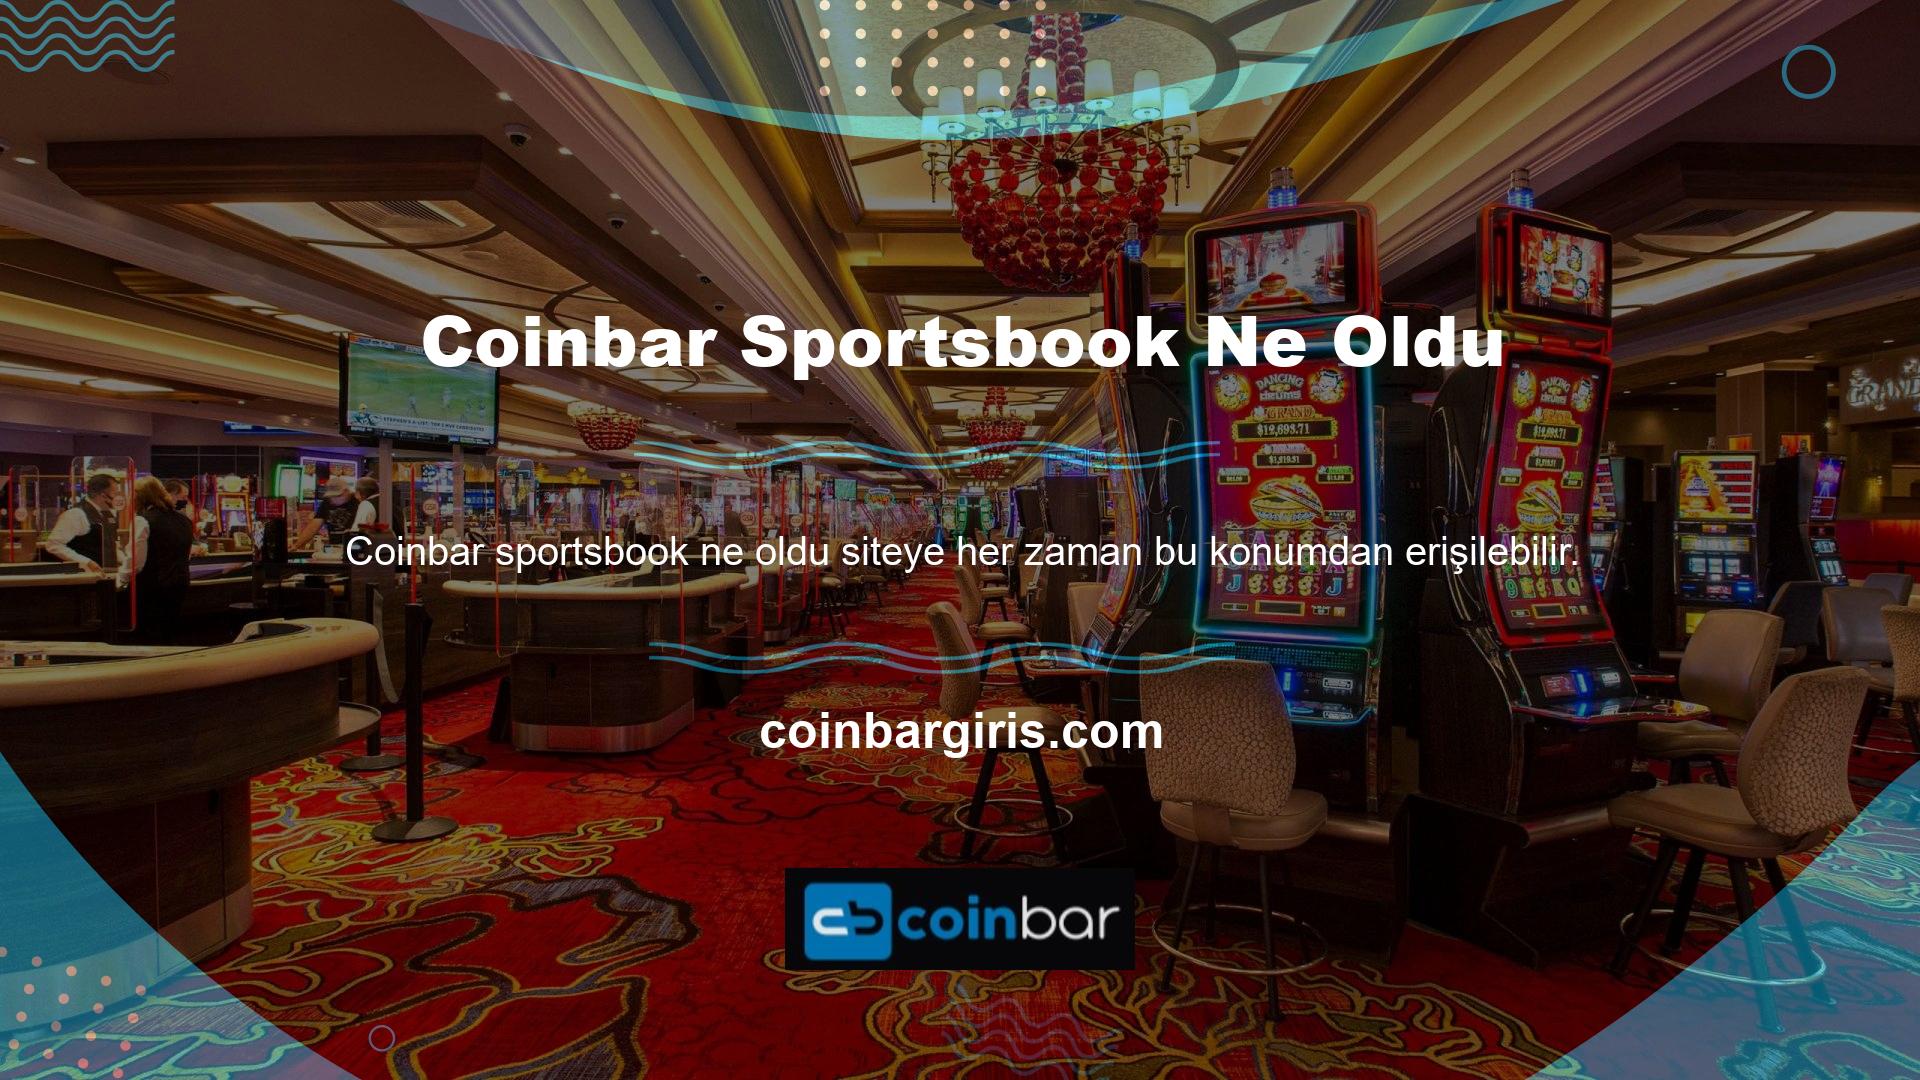 Coinbar Sportsbook, üyelerine futbol da dahil olmak üzere geniş bir spor yelpazesi sunuyor